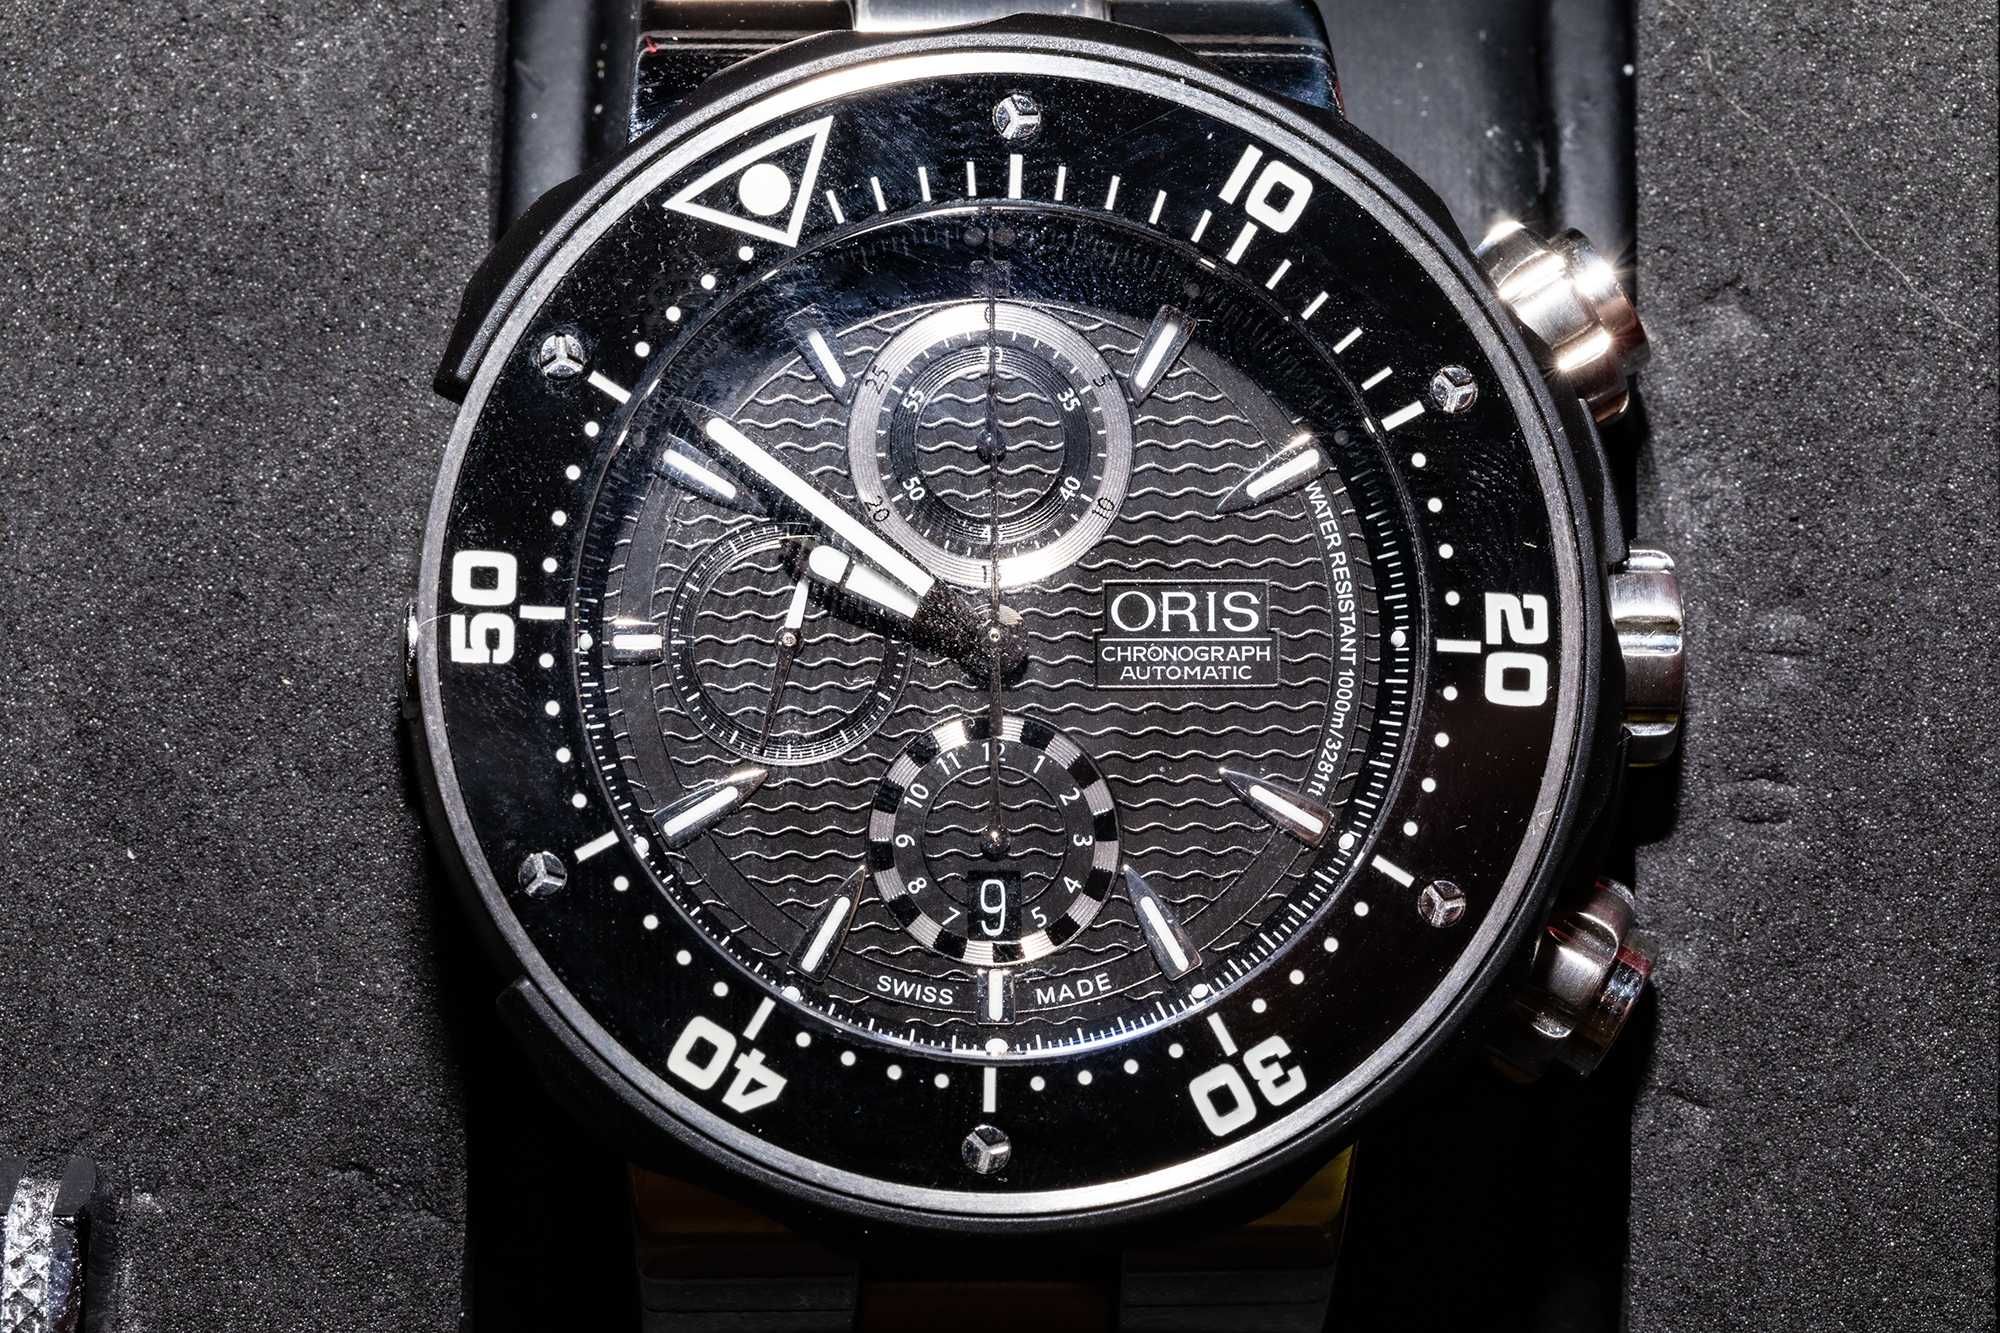 Хронометр часы Oris Prodiver Chronograph. Оригинал, новый. Эксклюзив.